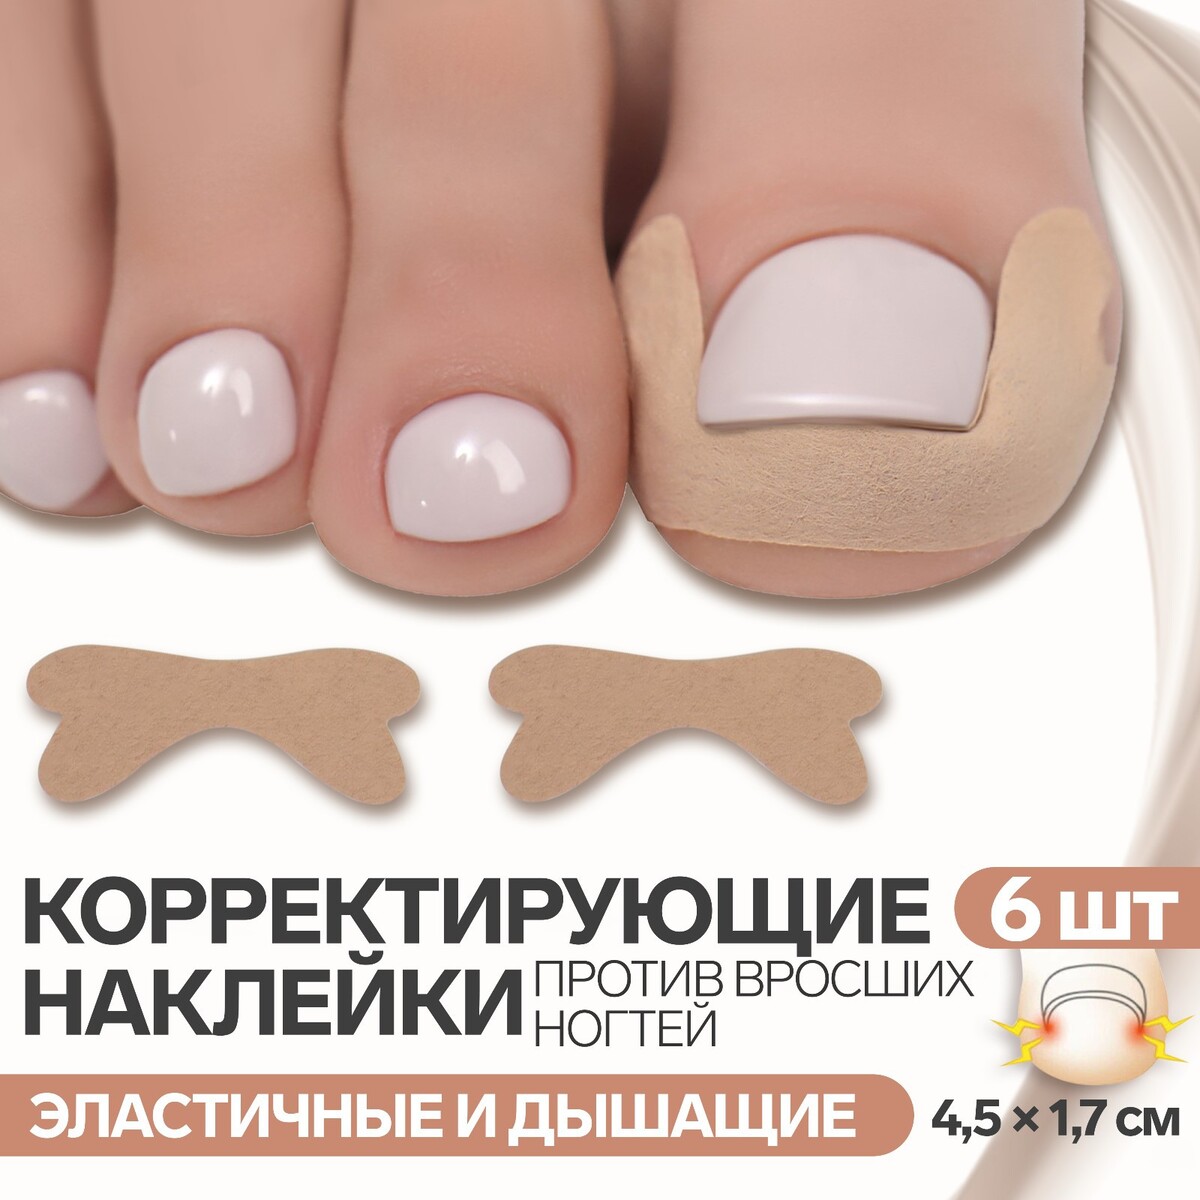 Наклейки против вросших ногтей, 6 шт, 4,5 × 1,7 см, цвет бежевый рим против македонии